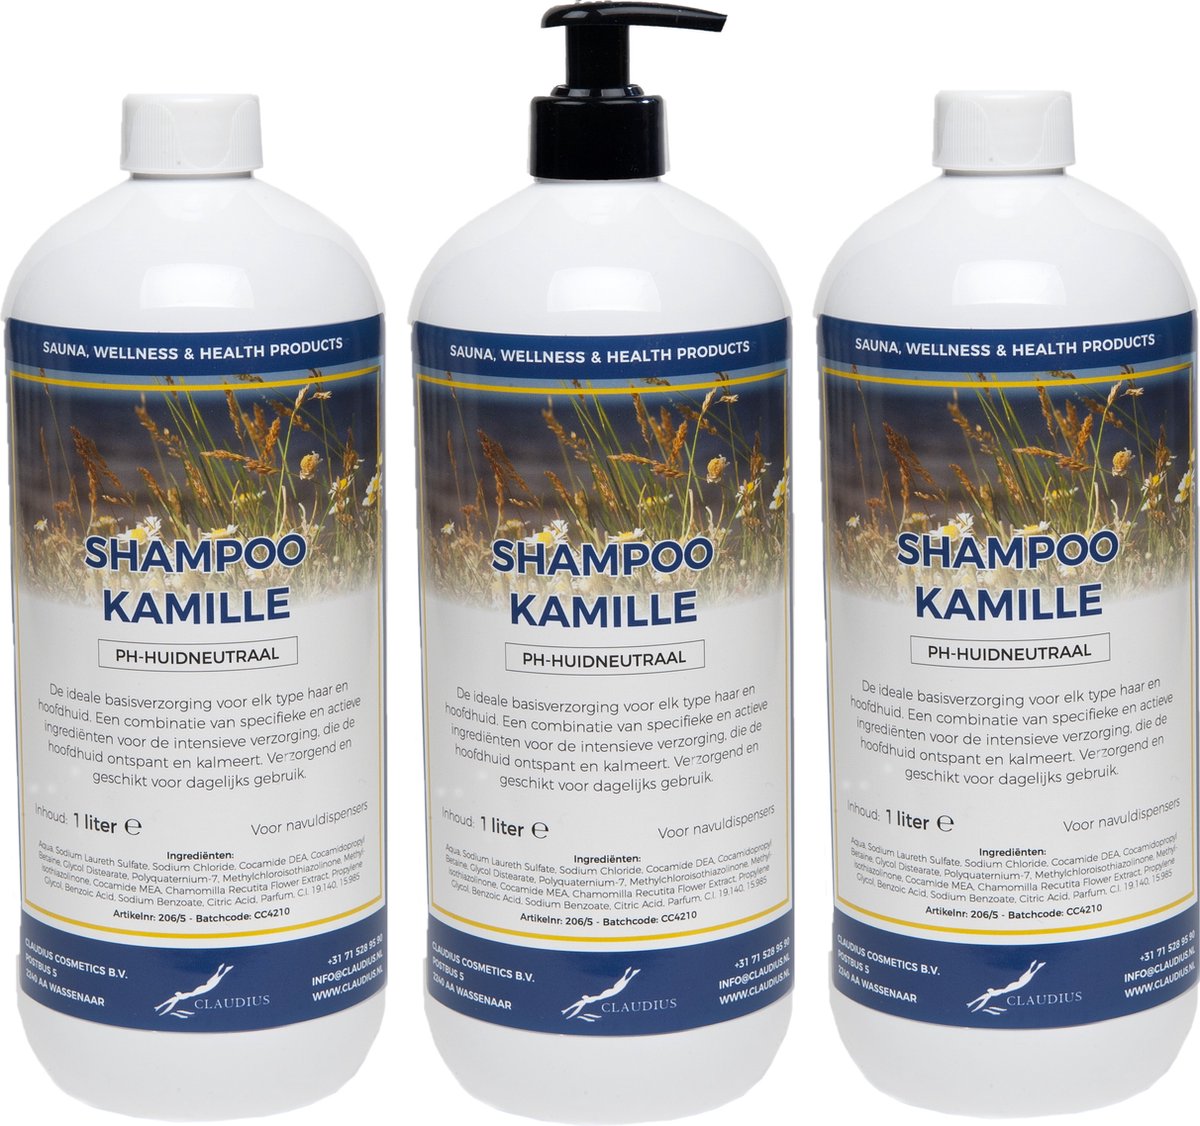 Shampoo Kamille 1 liter - set van 3 stuks - met gratis pomp